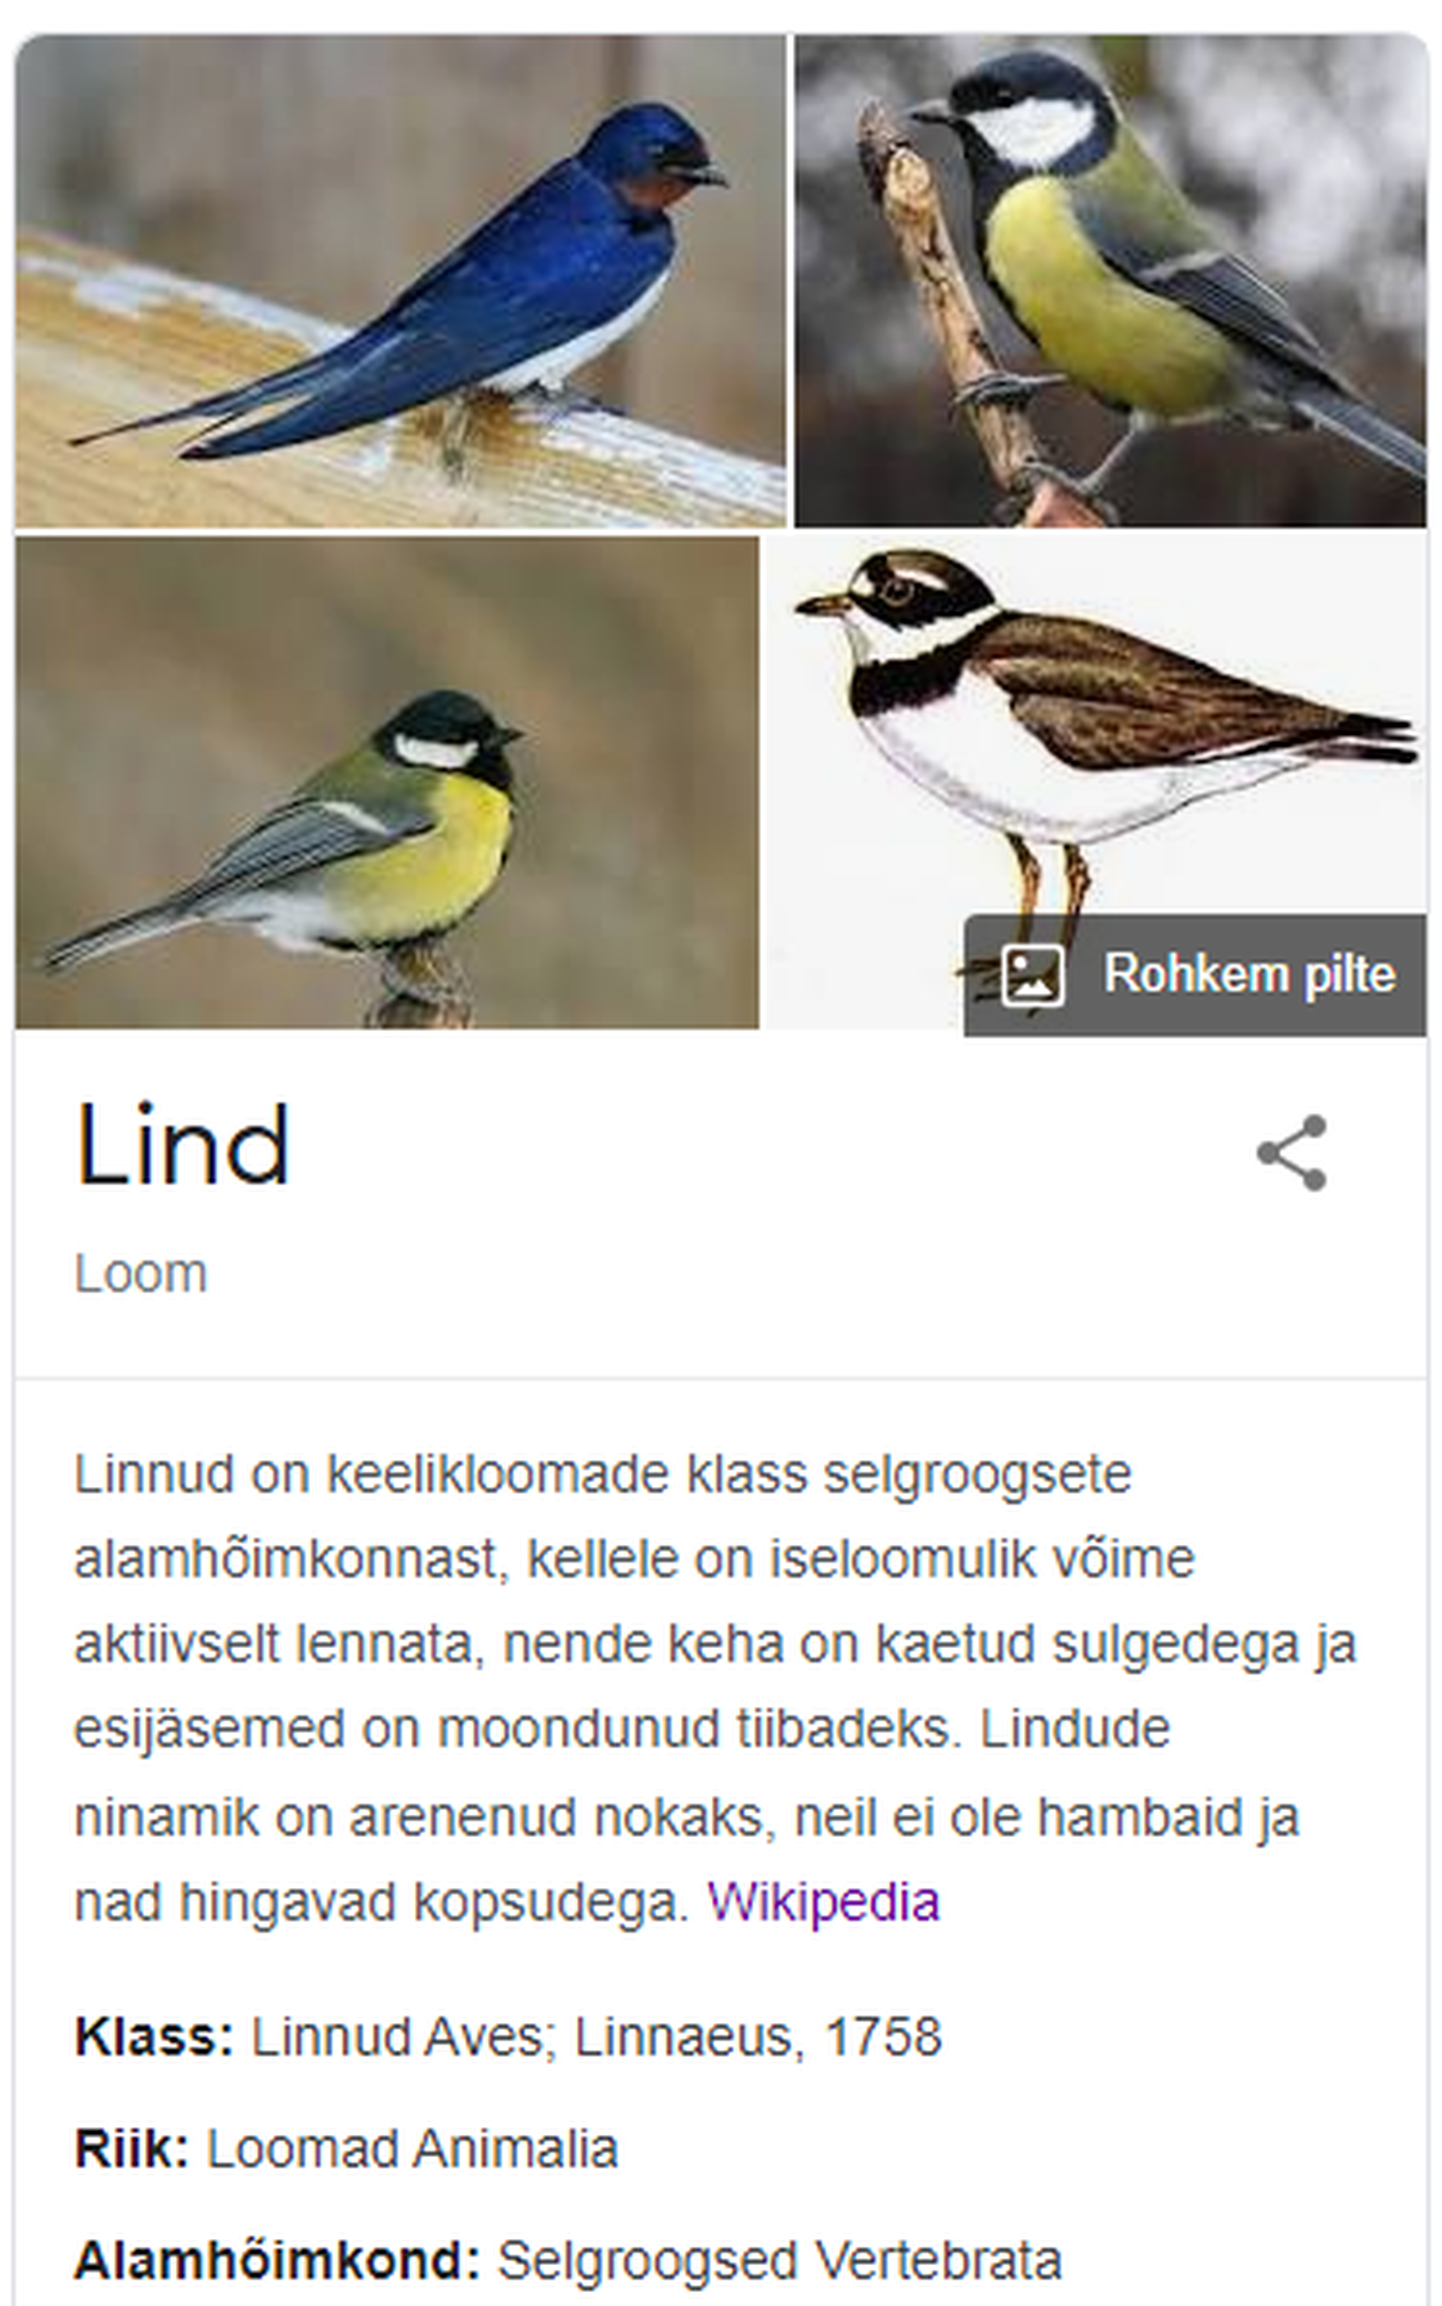 Wikipedia teatas, et lind on tegelikult hoopis loom.